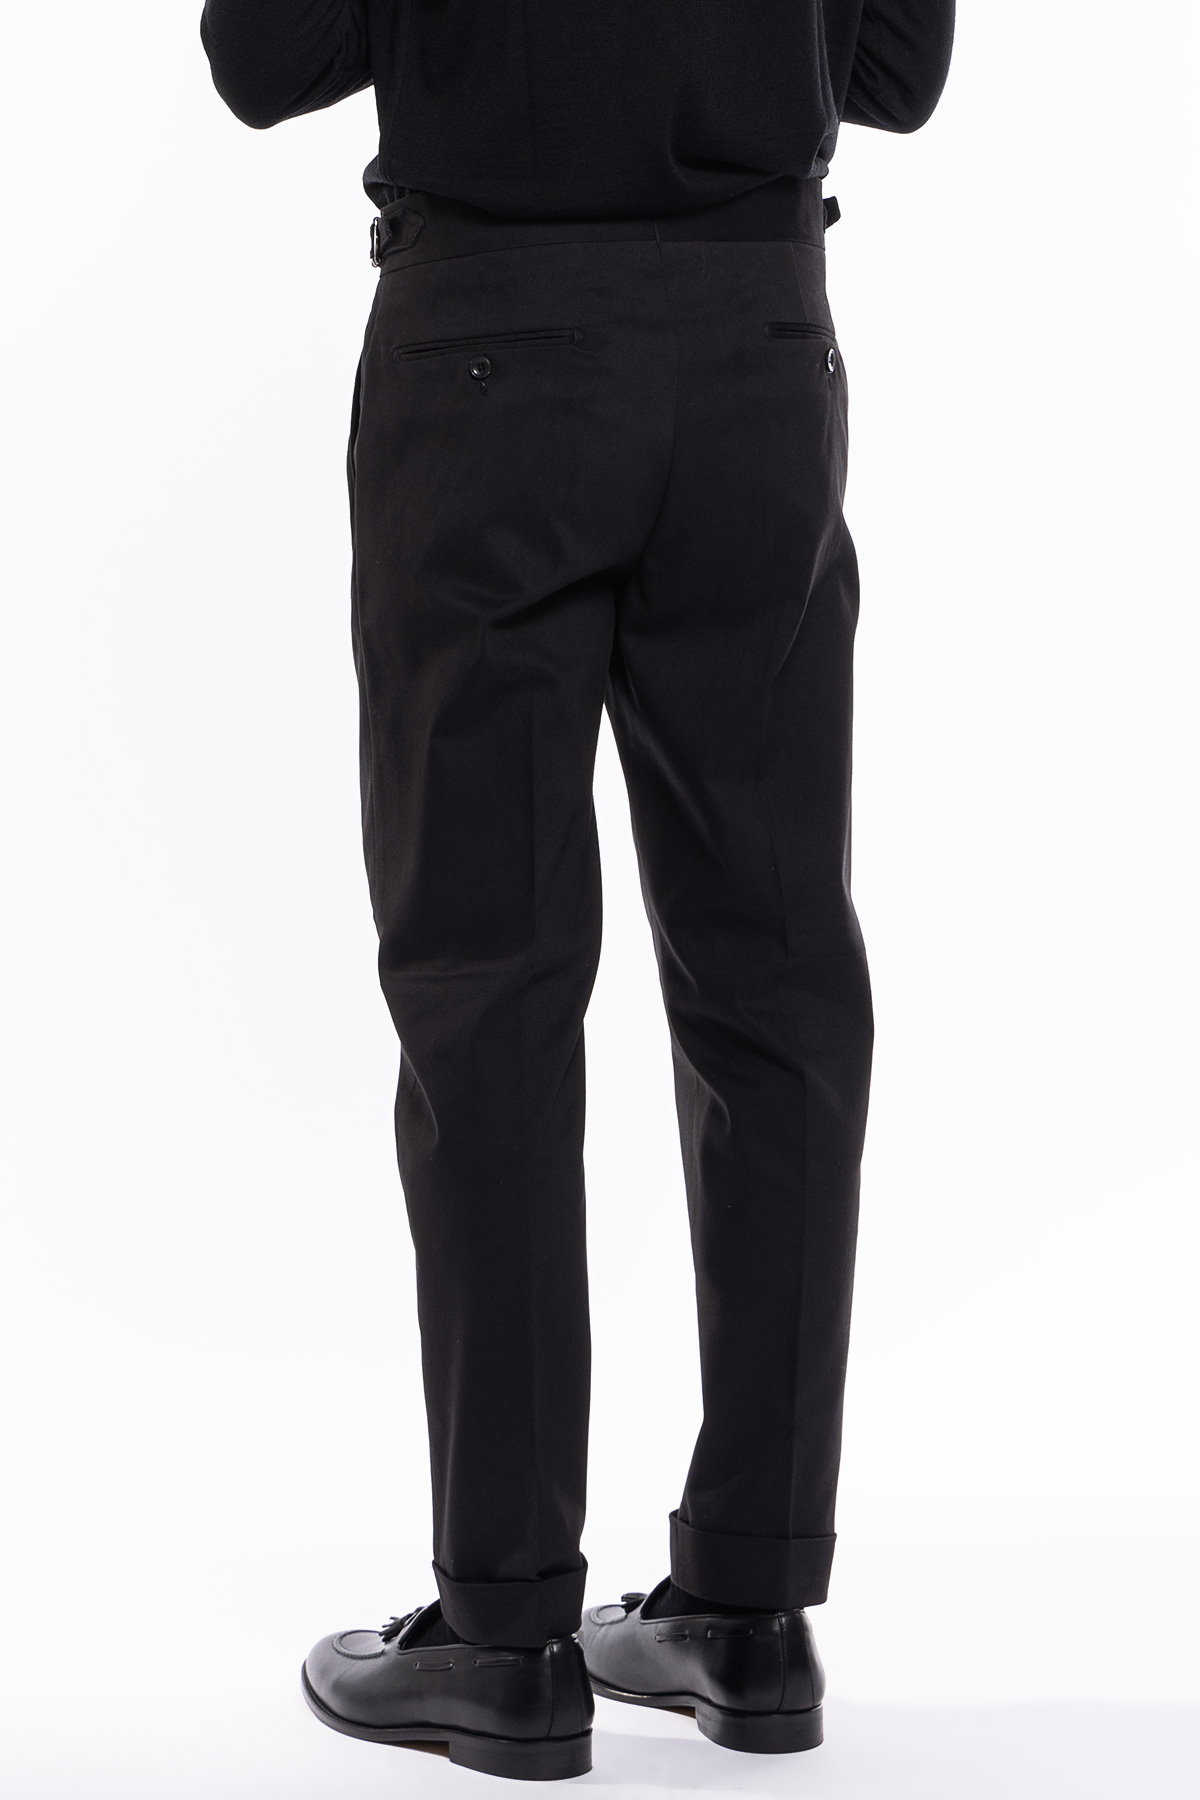 Pantalone uomo nero vita alta tasca america in cotone con doppia pinces e fibbie laterali